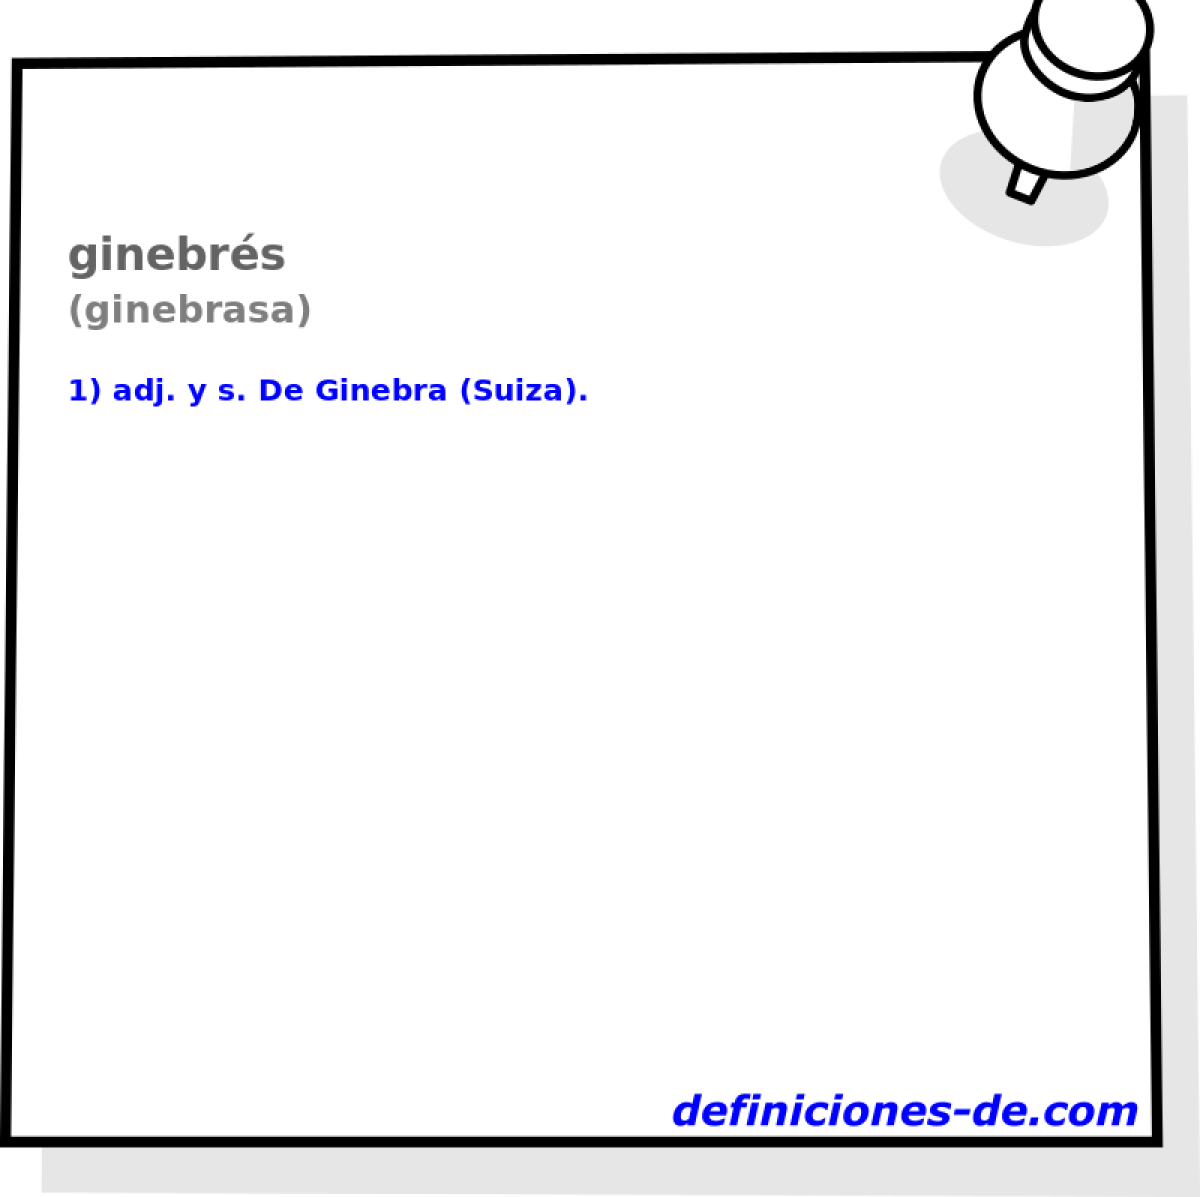 ginebrs (ginebrasa)